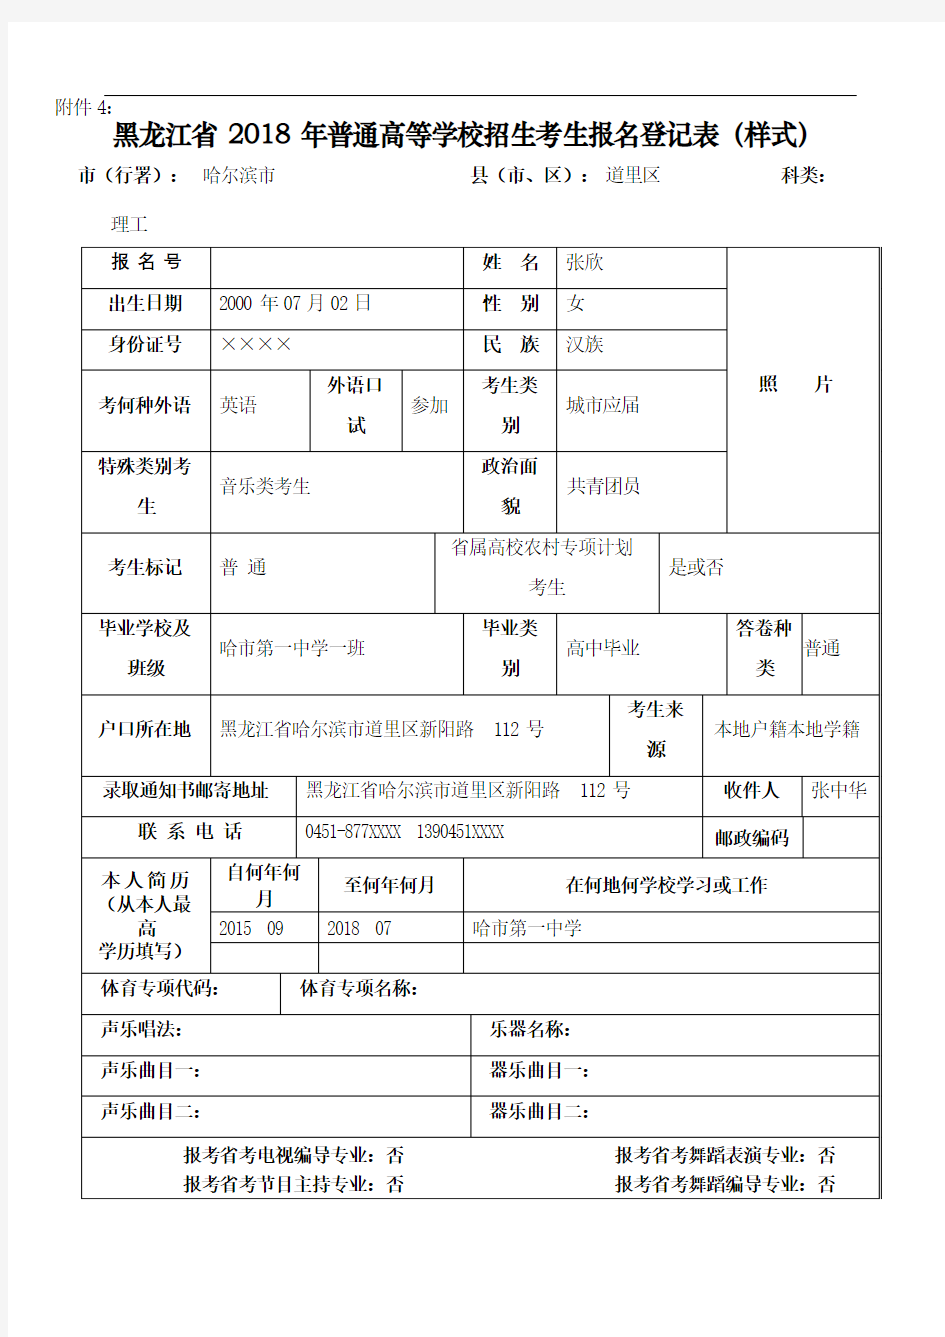 黑龙江省普通高等学校招生考生报名登记表样式